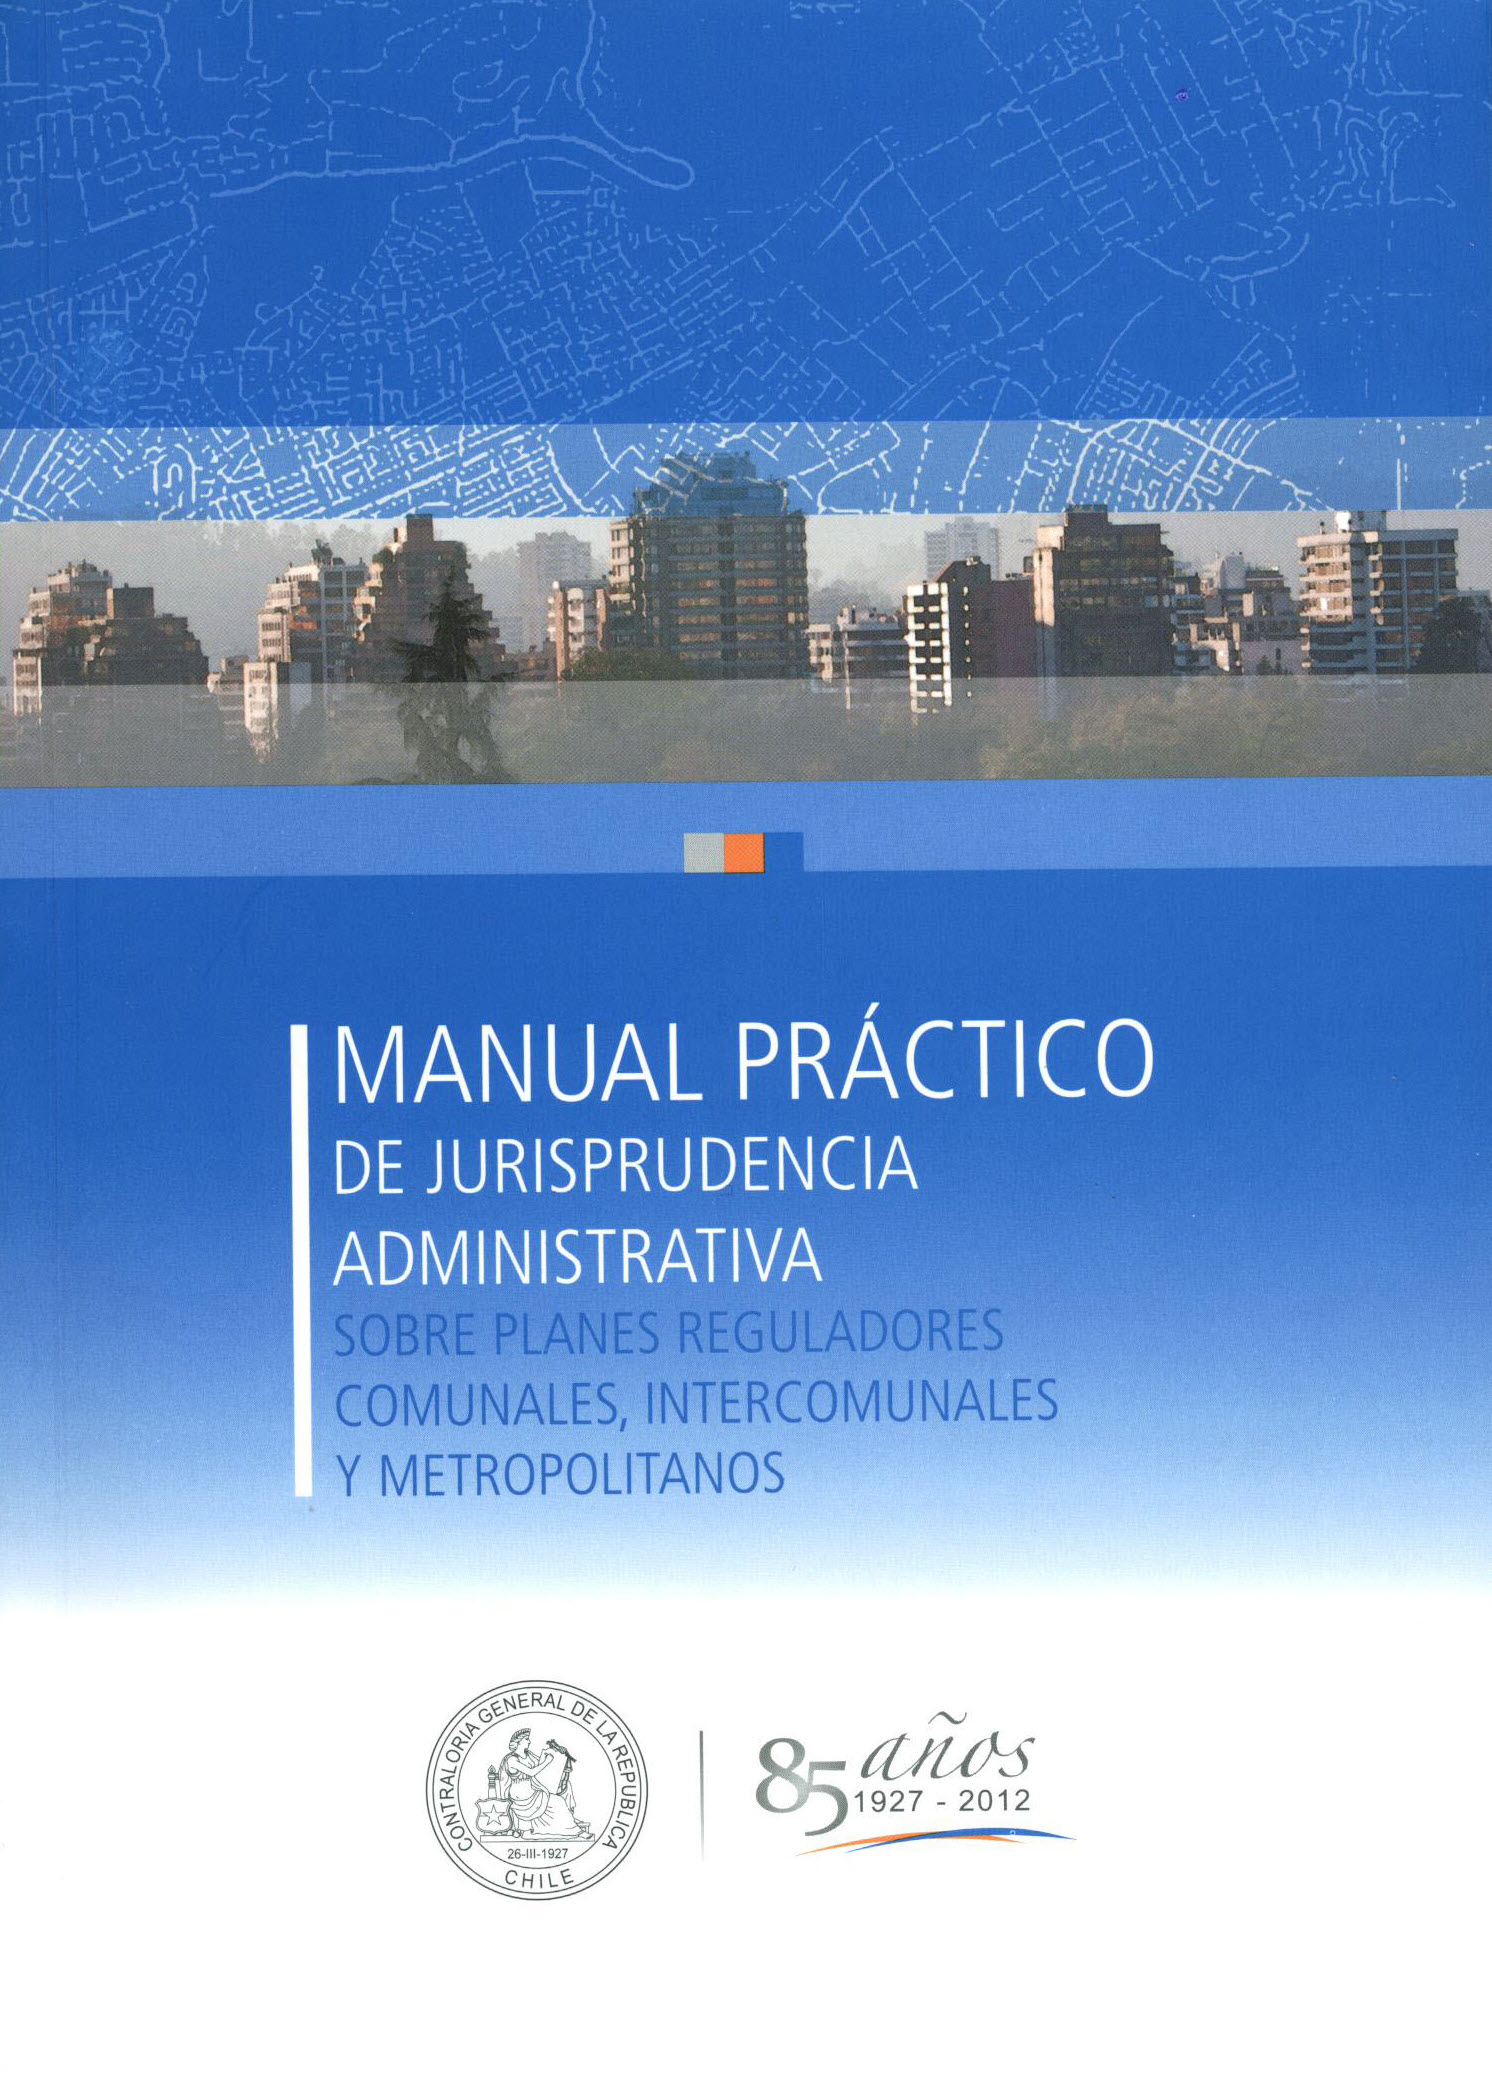 Manual práctico de jurisprudencia administrativa sobre planes reguladores comunales, intercomunales y Metropolitanos